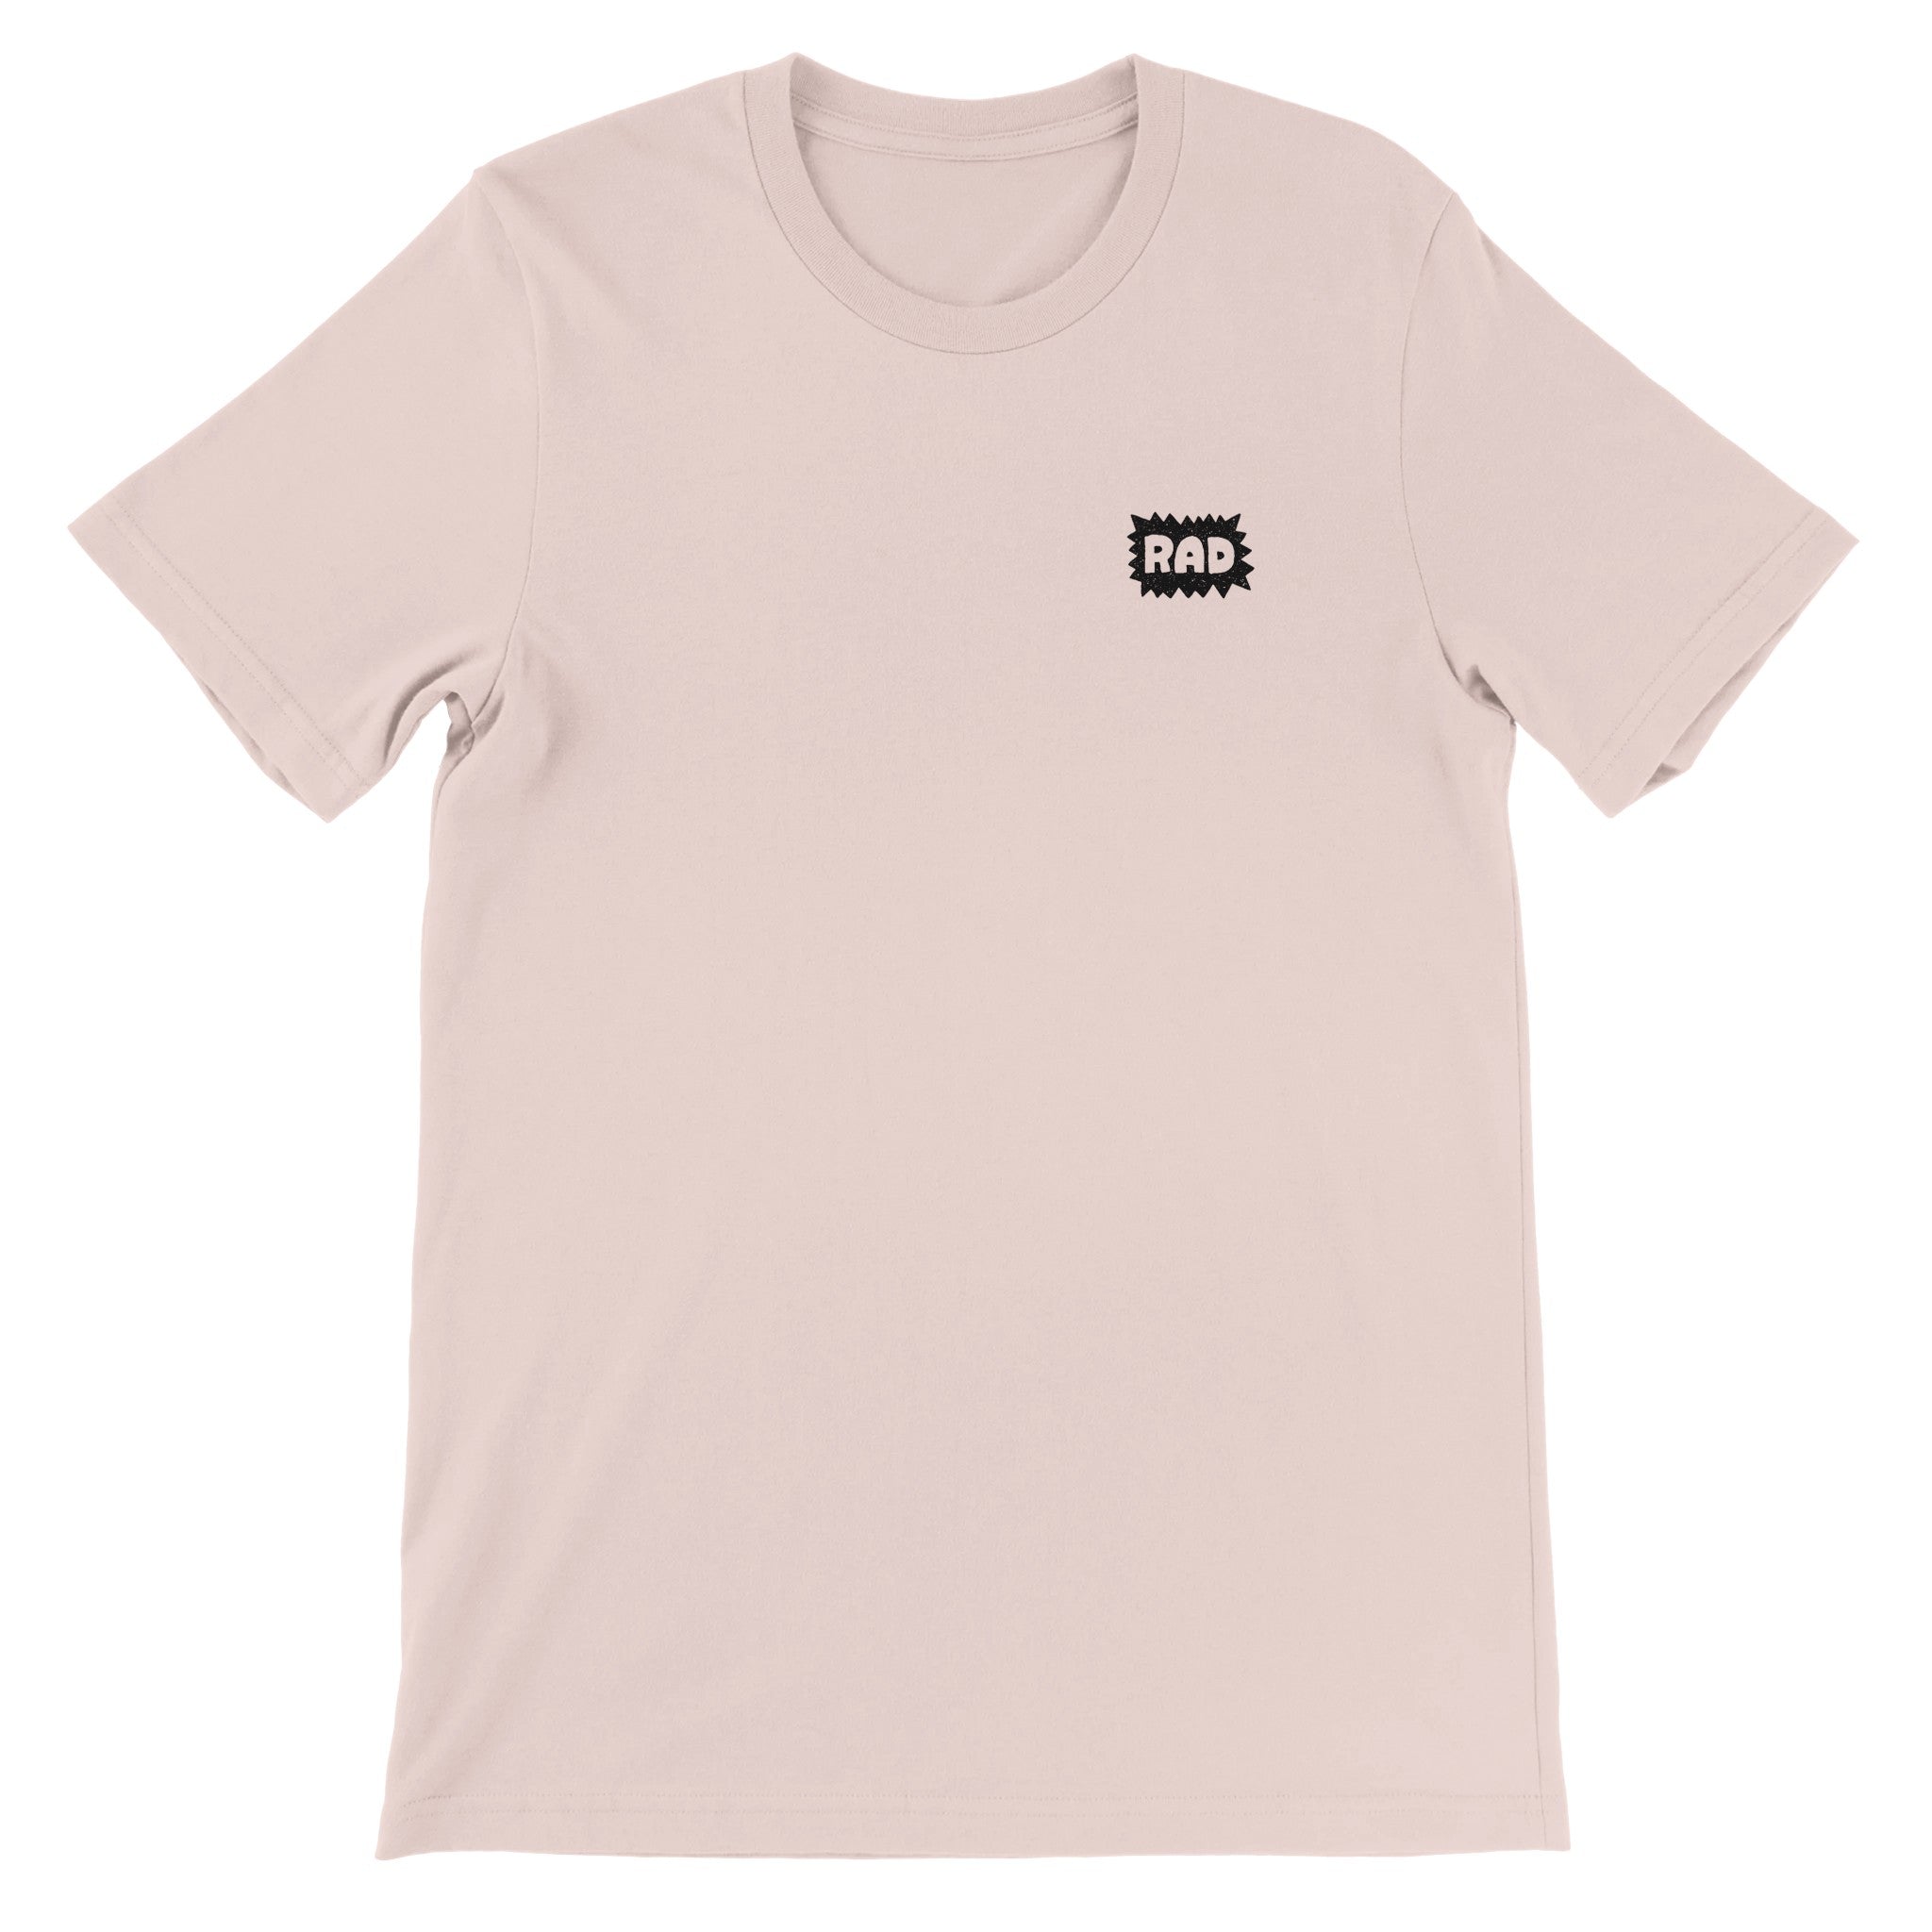 RAD Crewneck T-shirt - Optimalprint